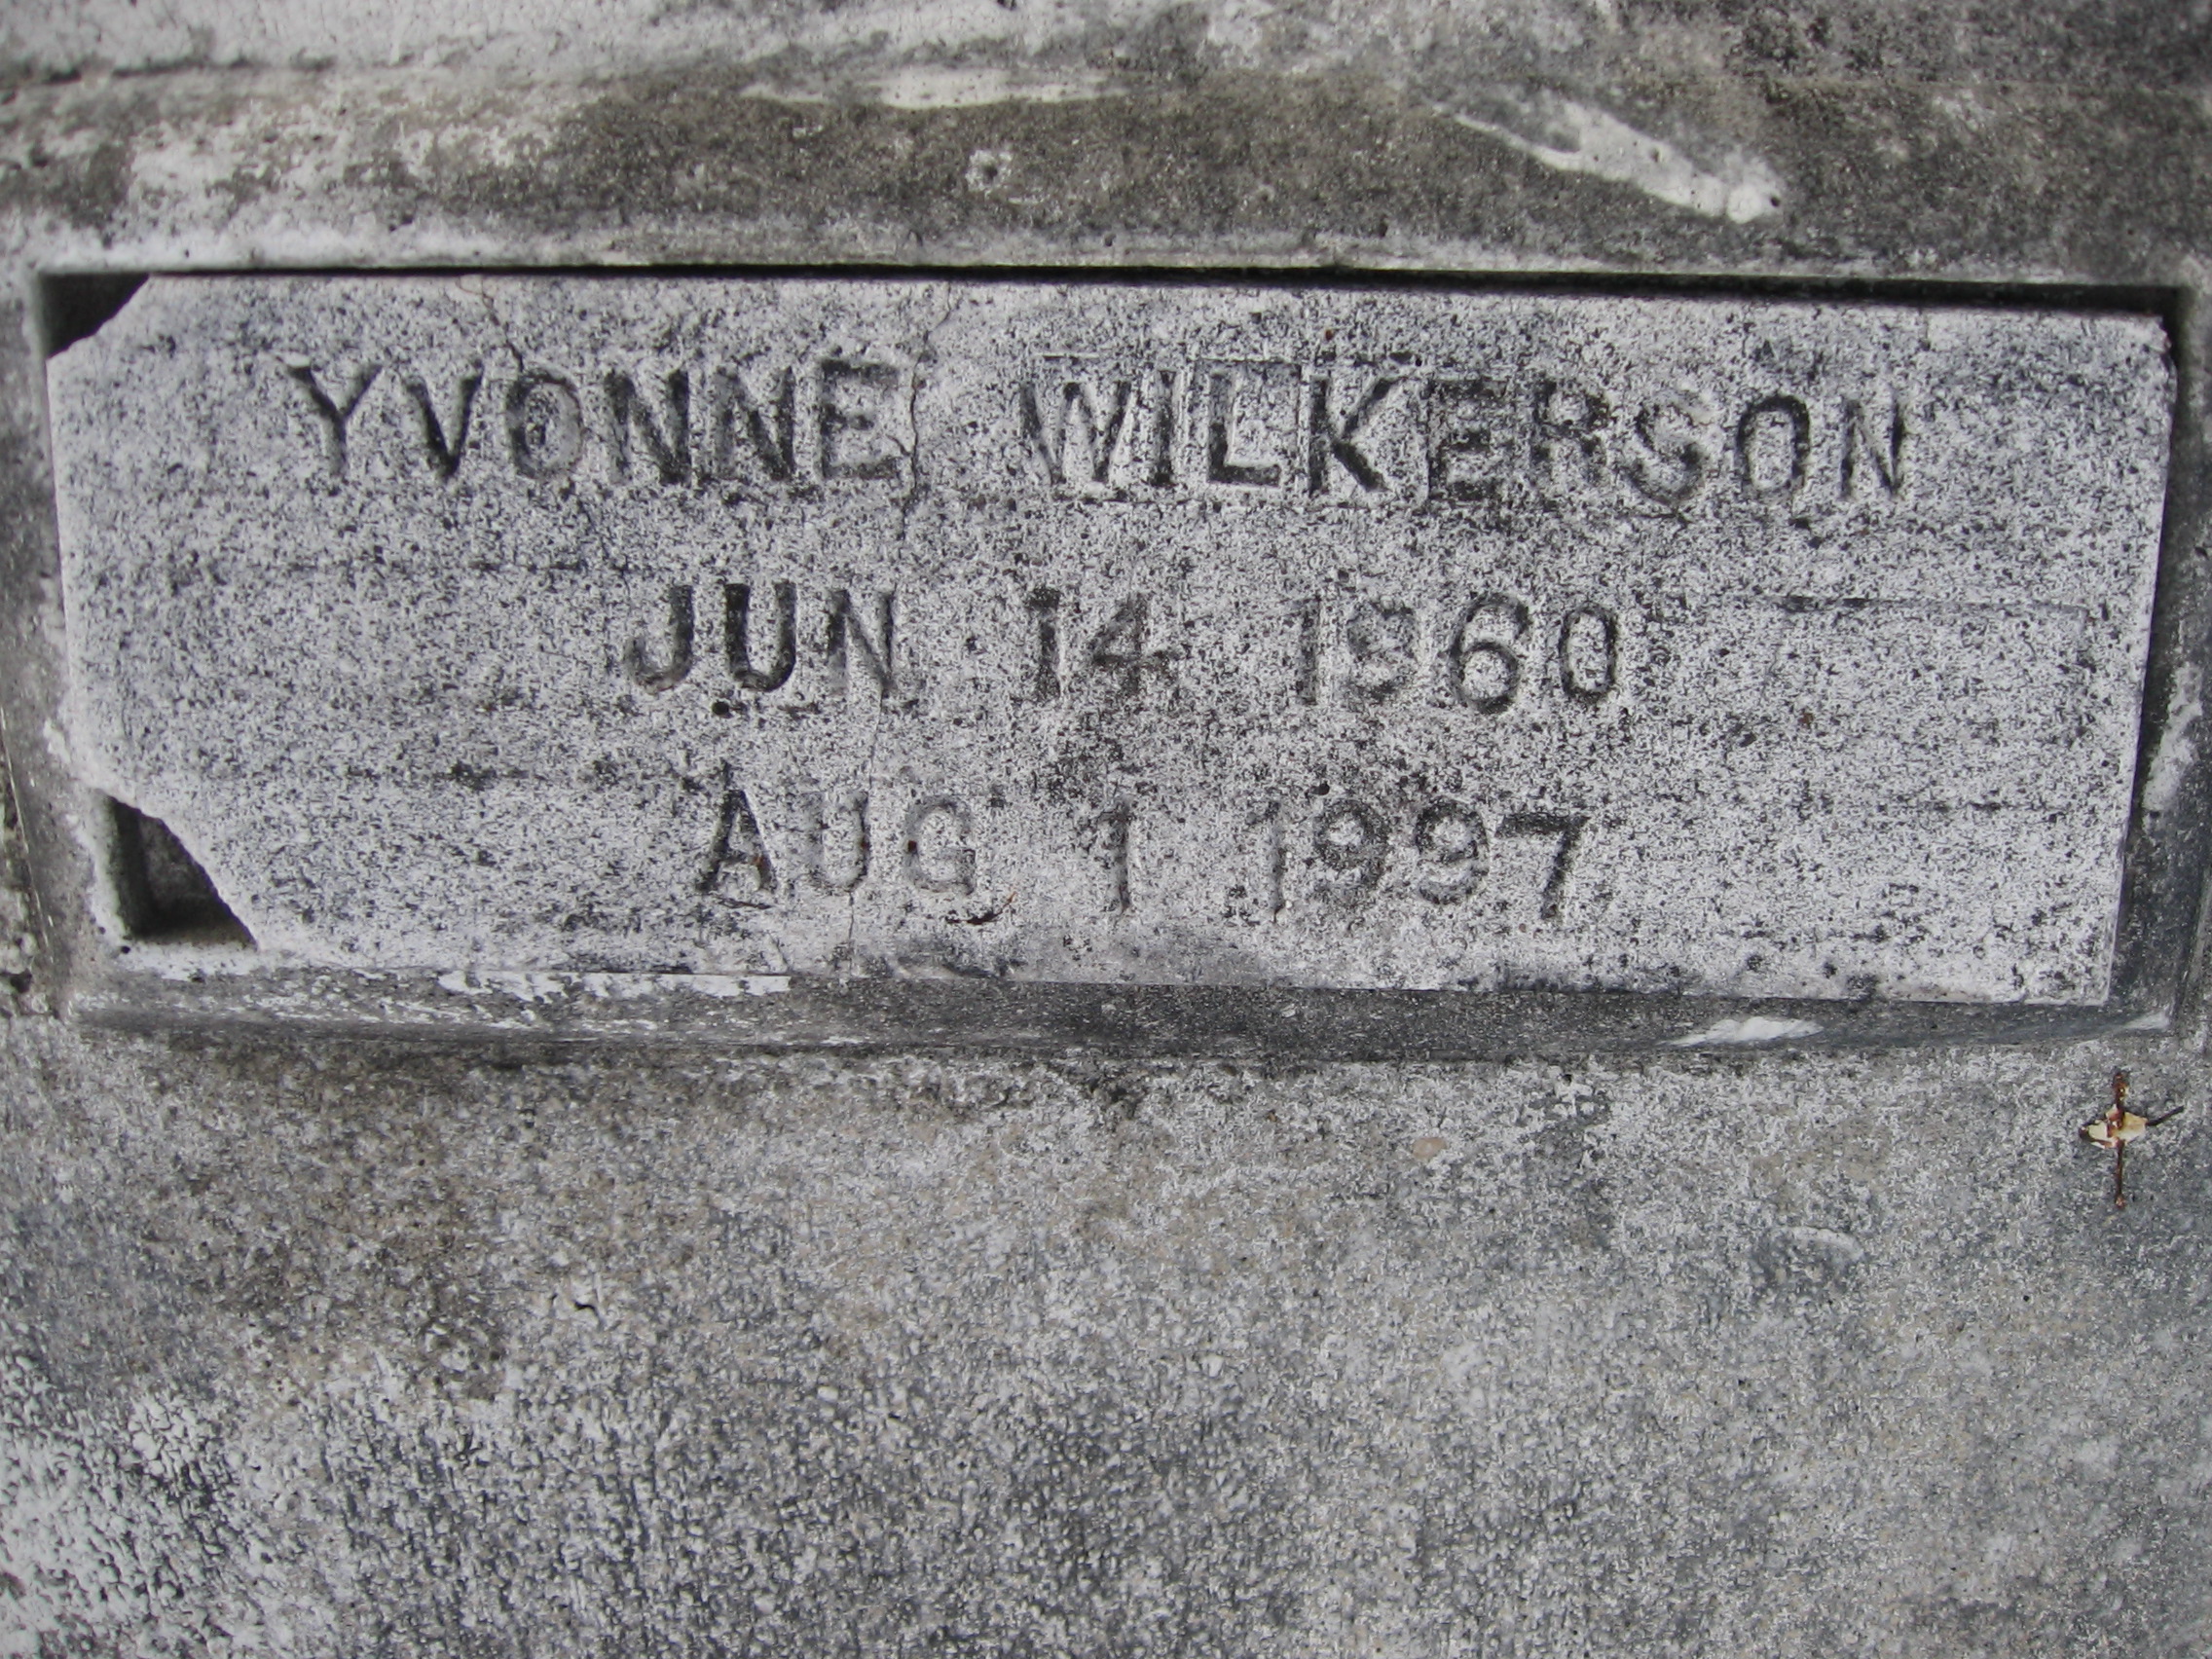 Yvonne Wilkerson